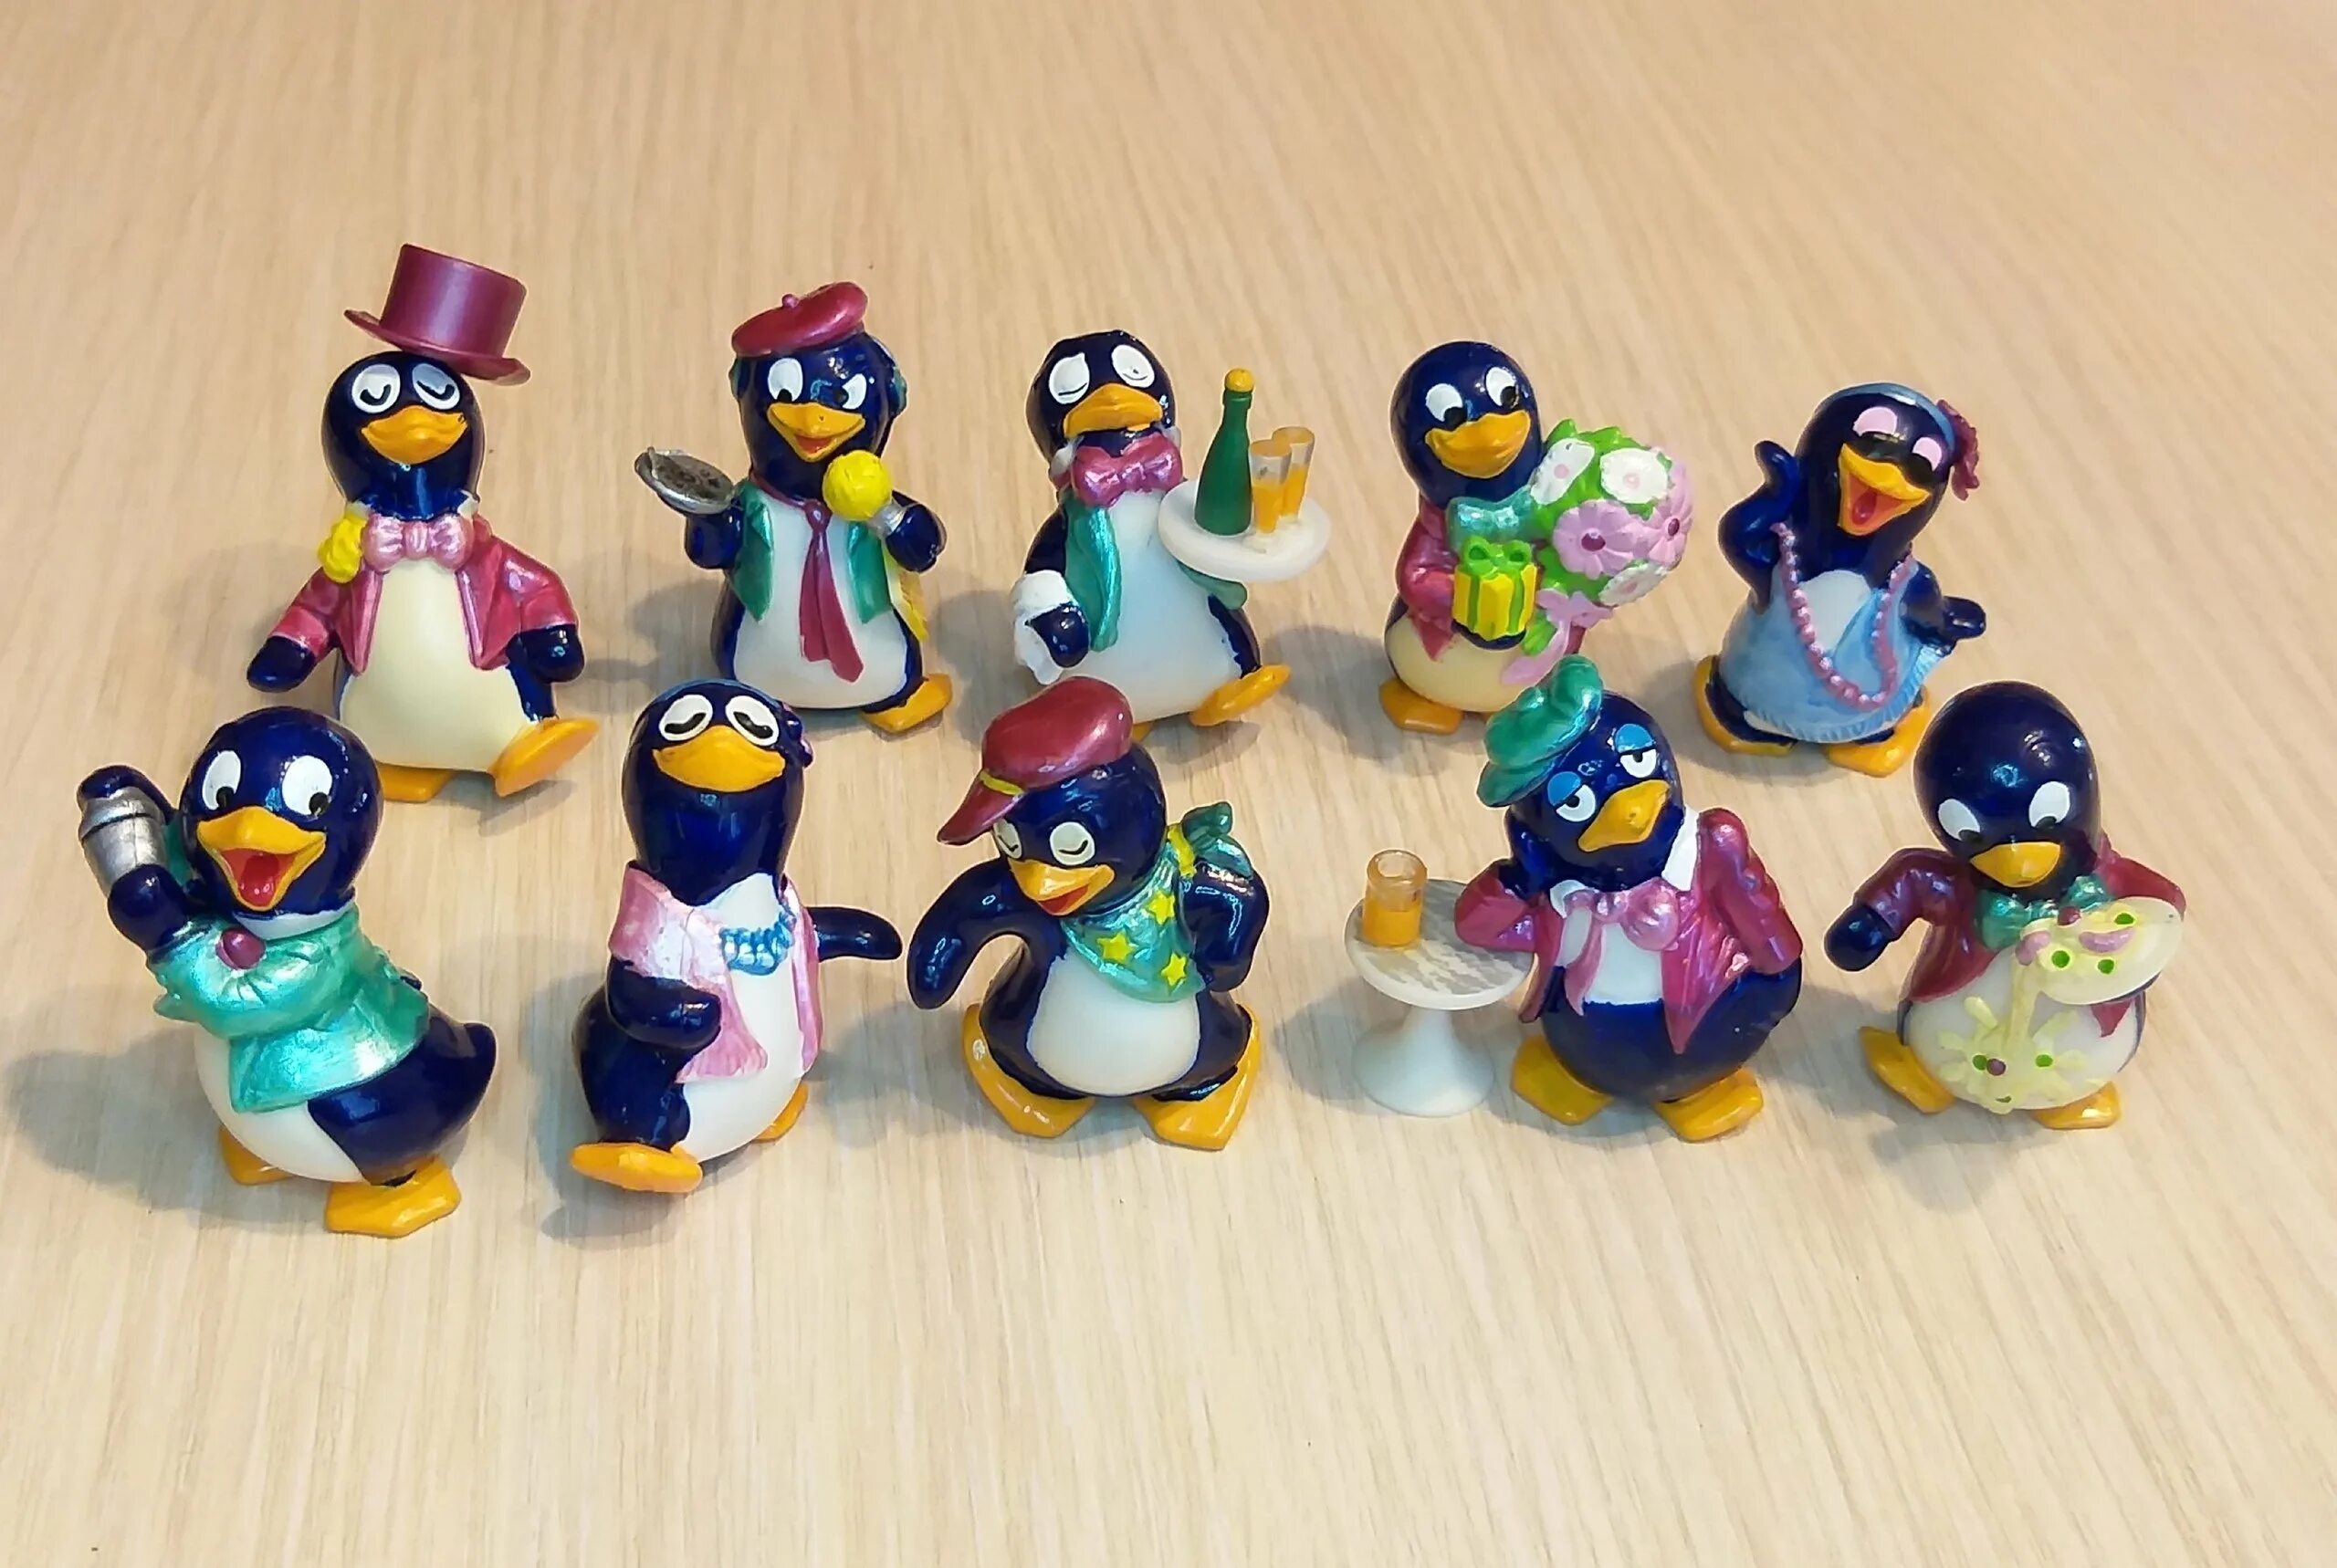 Киндер сюрприз пингвины 1992. Коллекция Киндер сюрприз пингвинчики. Пингвины Киндер сюрприз 90-х. Коллекция киндеров пингвины. Киндер игрушки пингвины